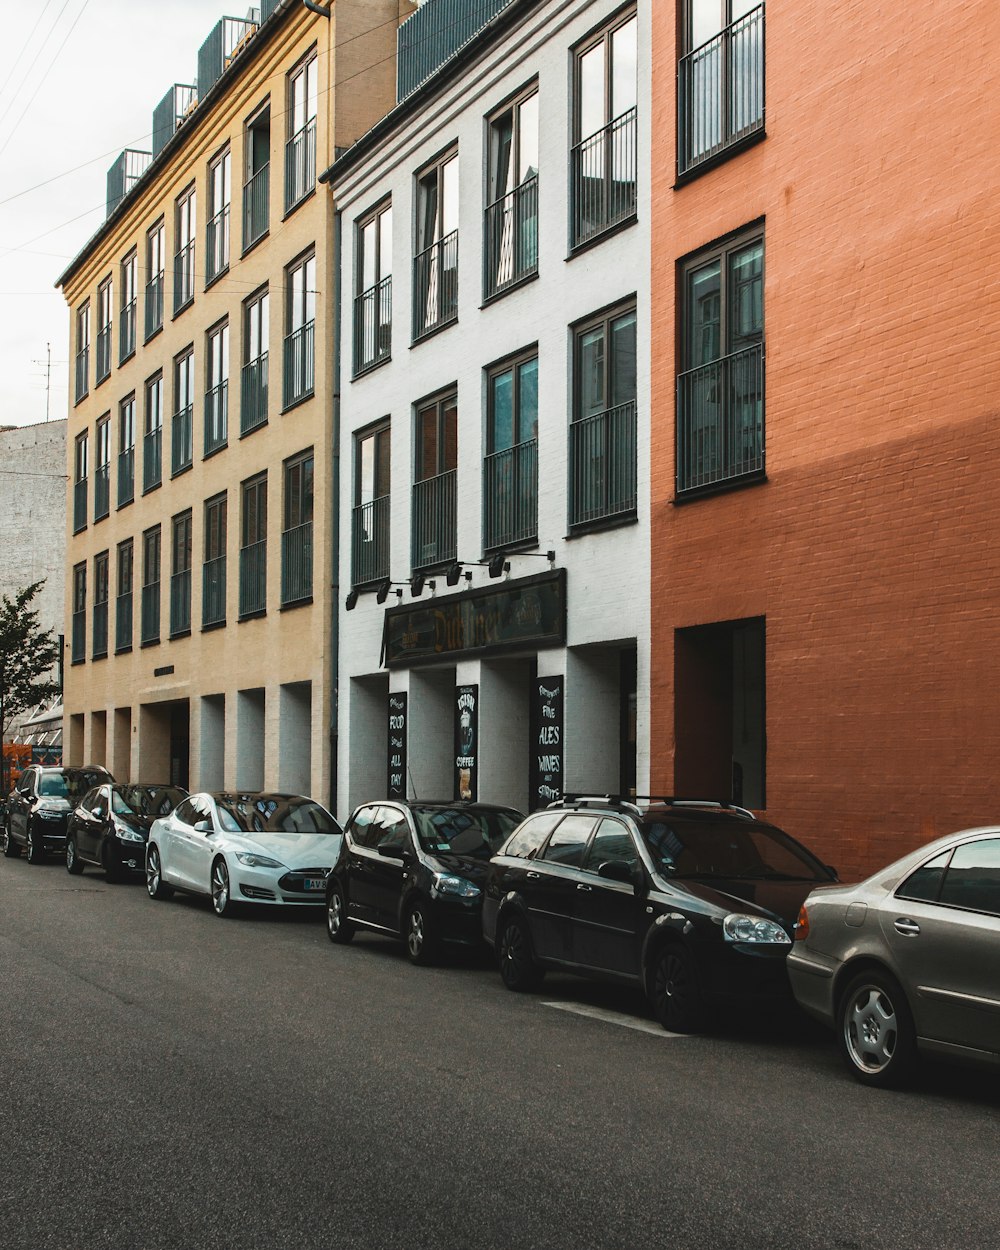 Estacionamiento de automóviles estacionado junto a edificios durante el día